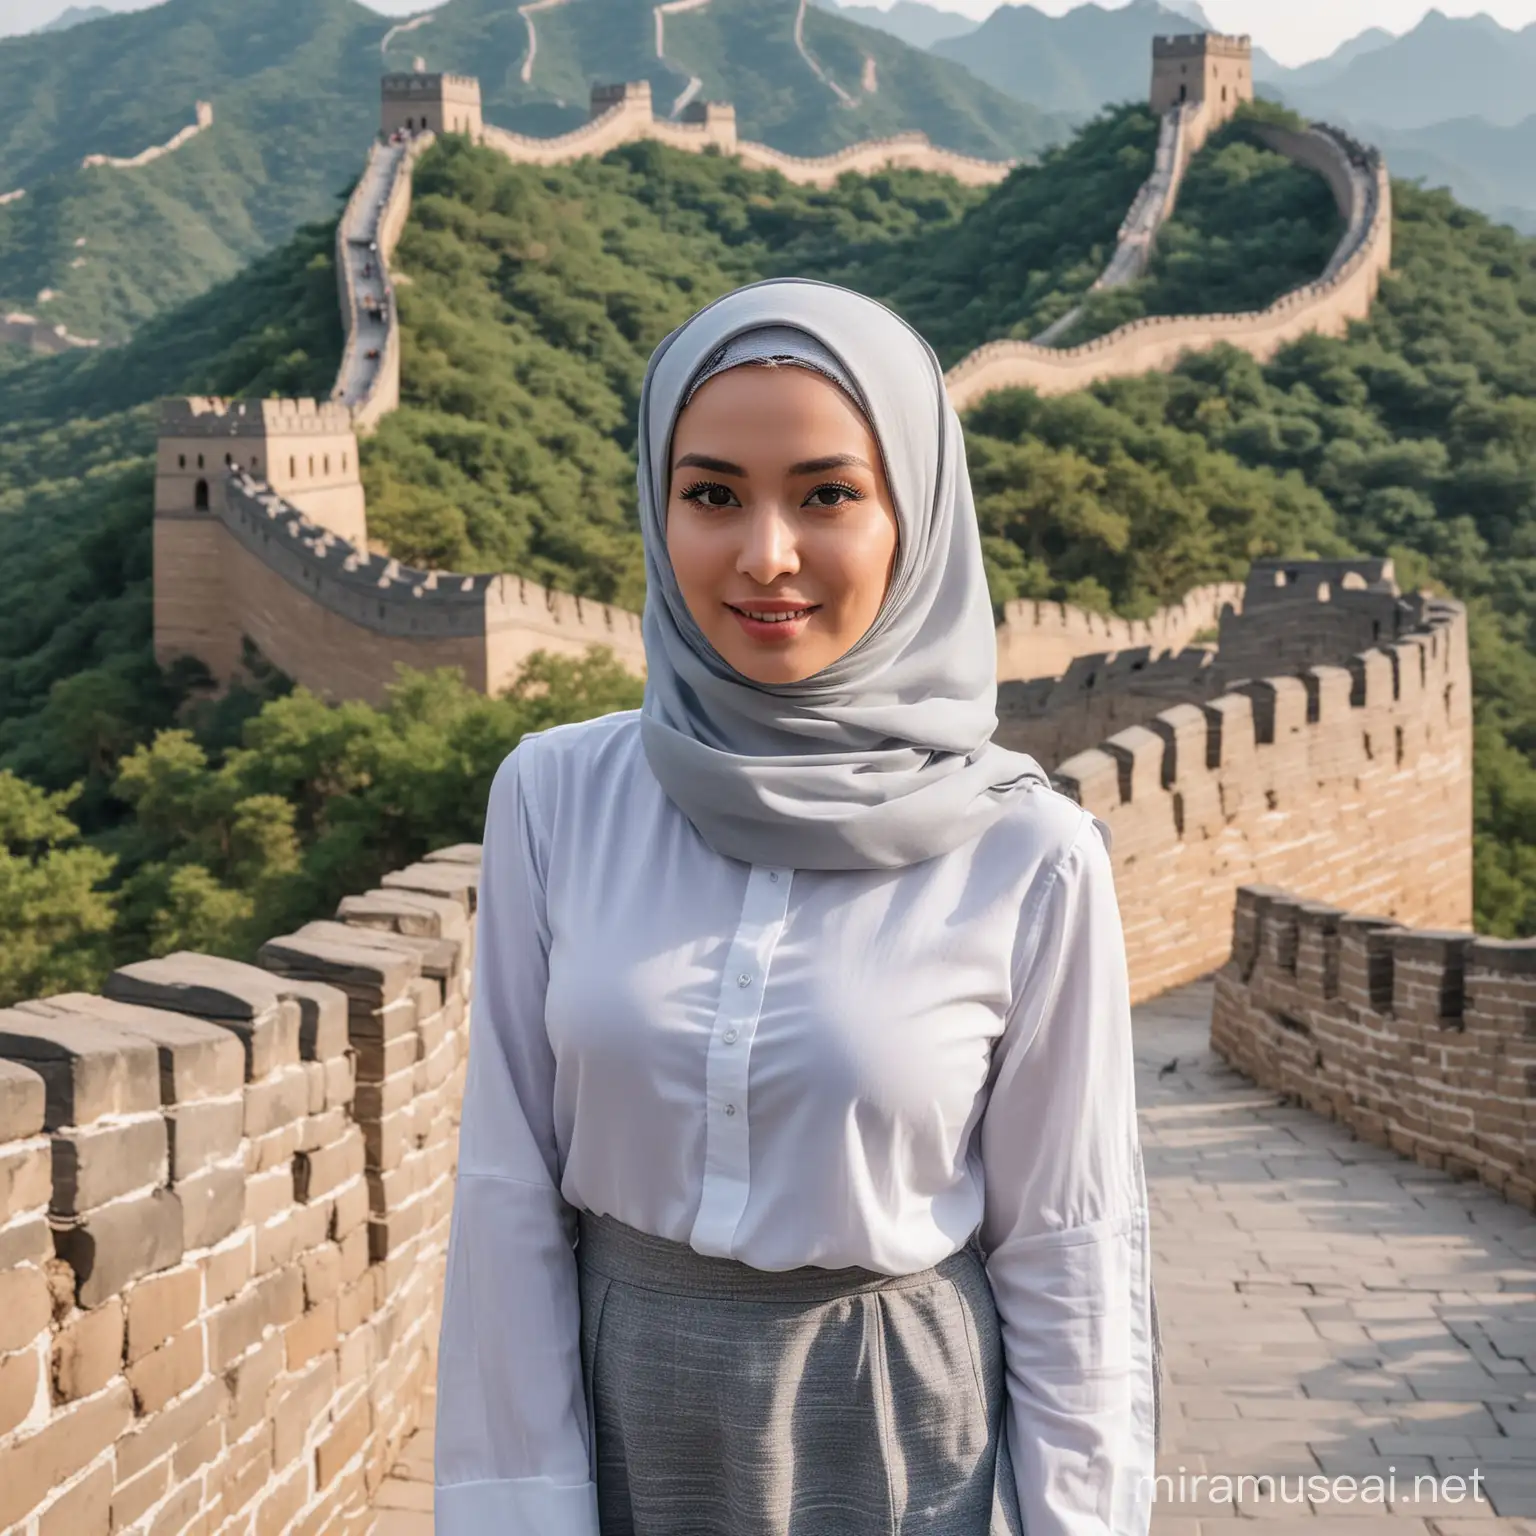 Gadis cantik berjilbab abu abu,baju hem putih,berdiri menghadap kamera,latar belakang greatwall di china